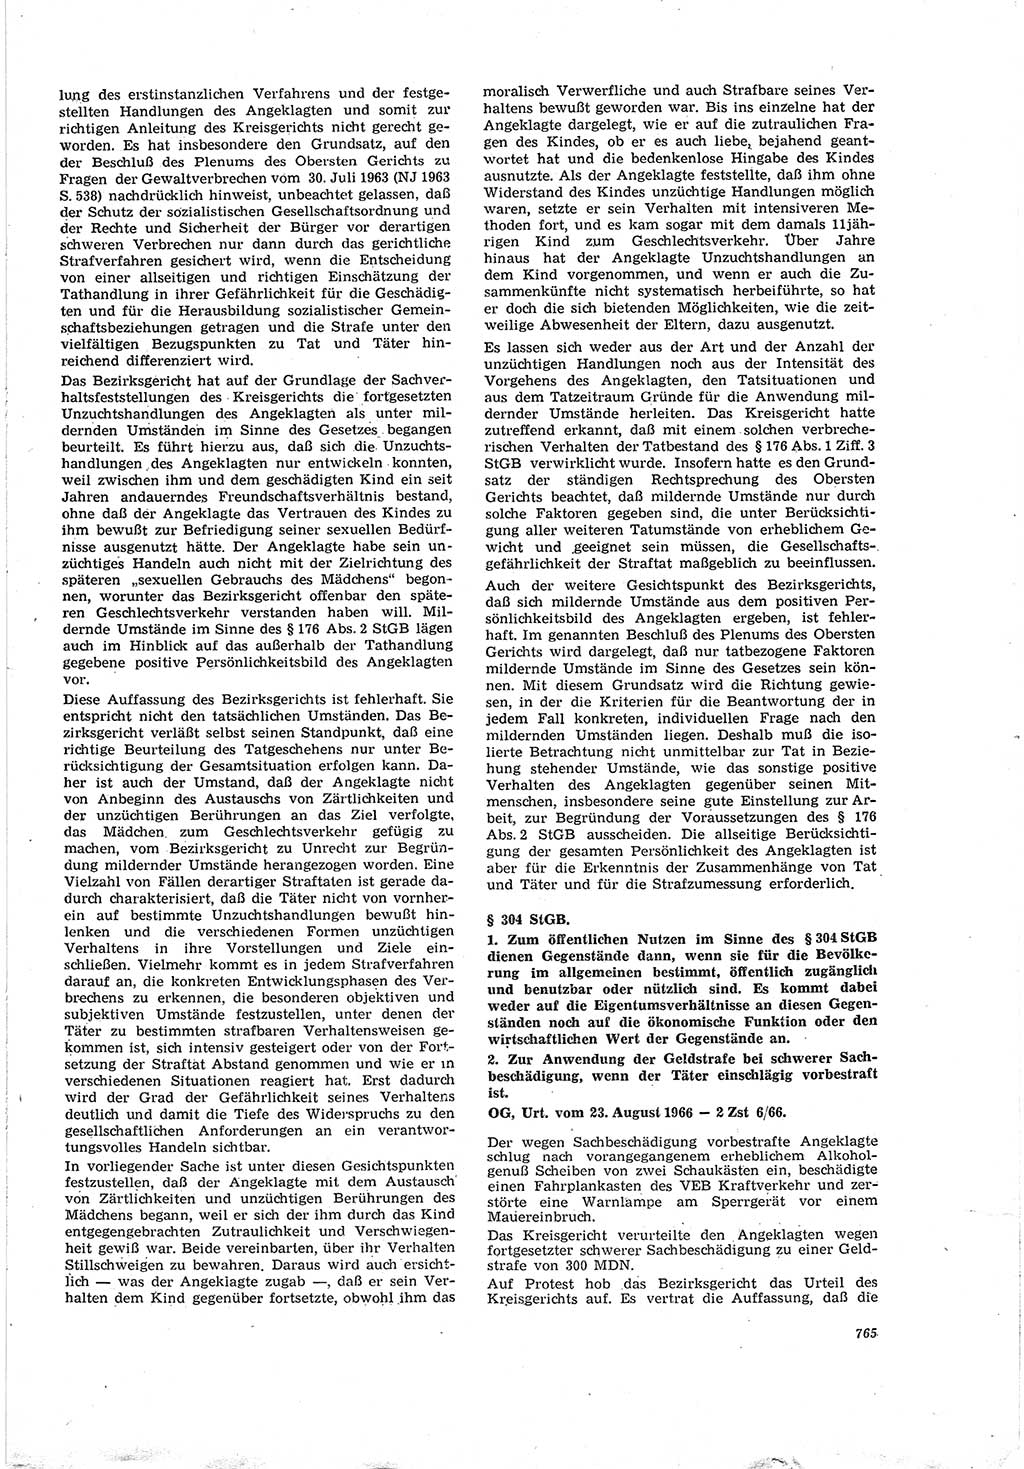 Neue Justiz (NJ), Zeitschrift für Recht und Rechtswissenschaft [Deutsche Demokratische Republik (DDR)], 20. Jahrgang 1966, Seite 765 (NJ DDR 1966, S. 765)